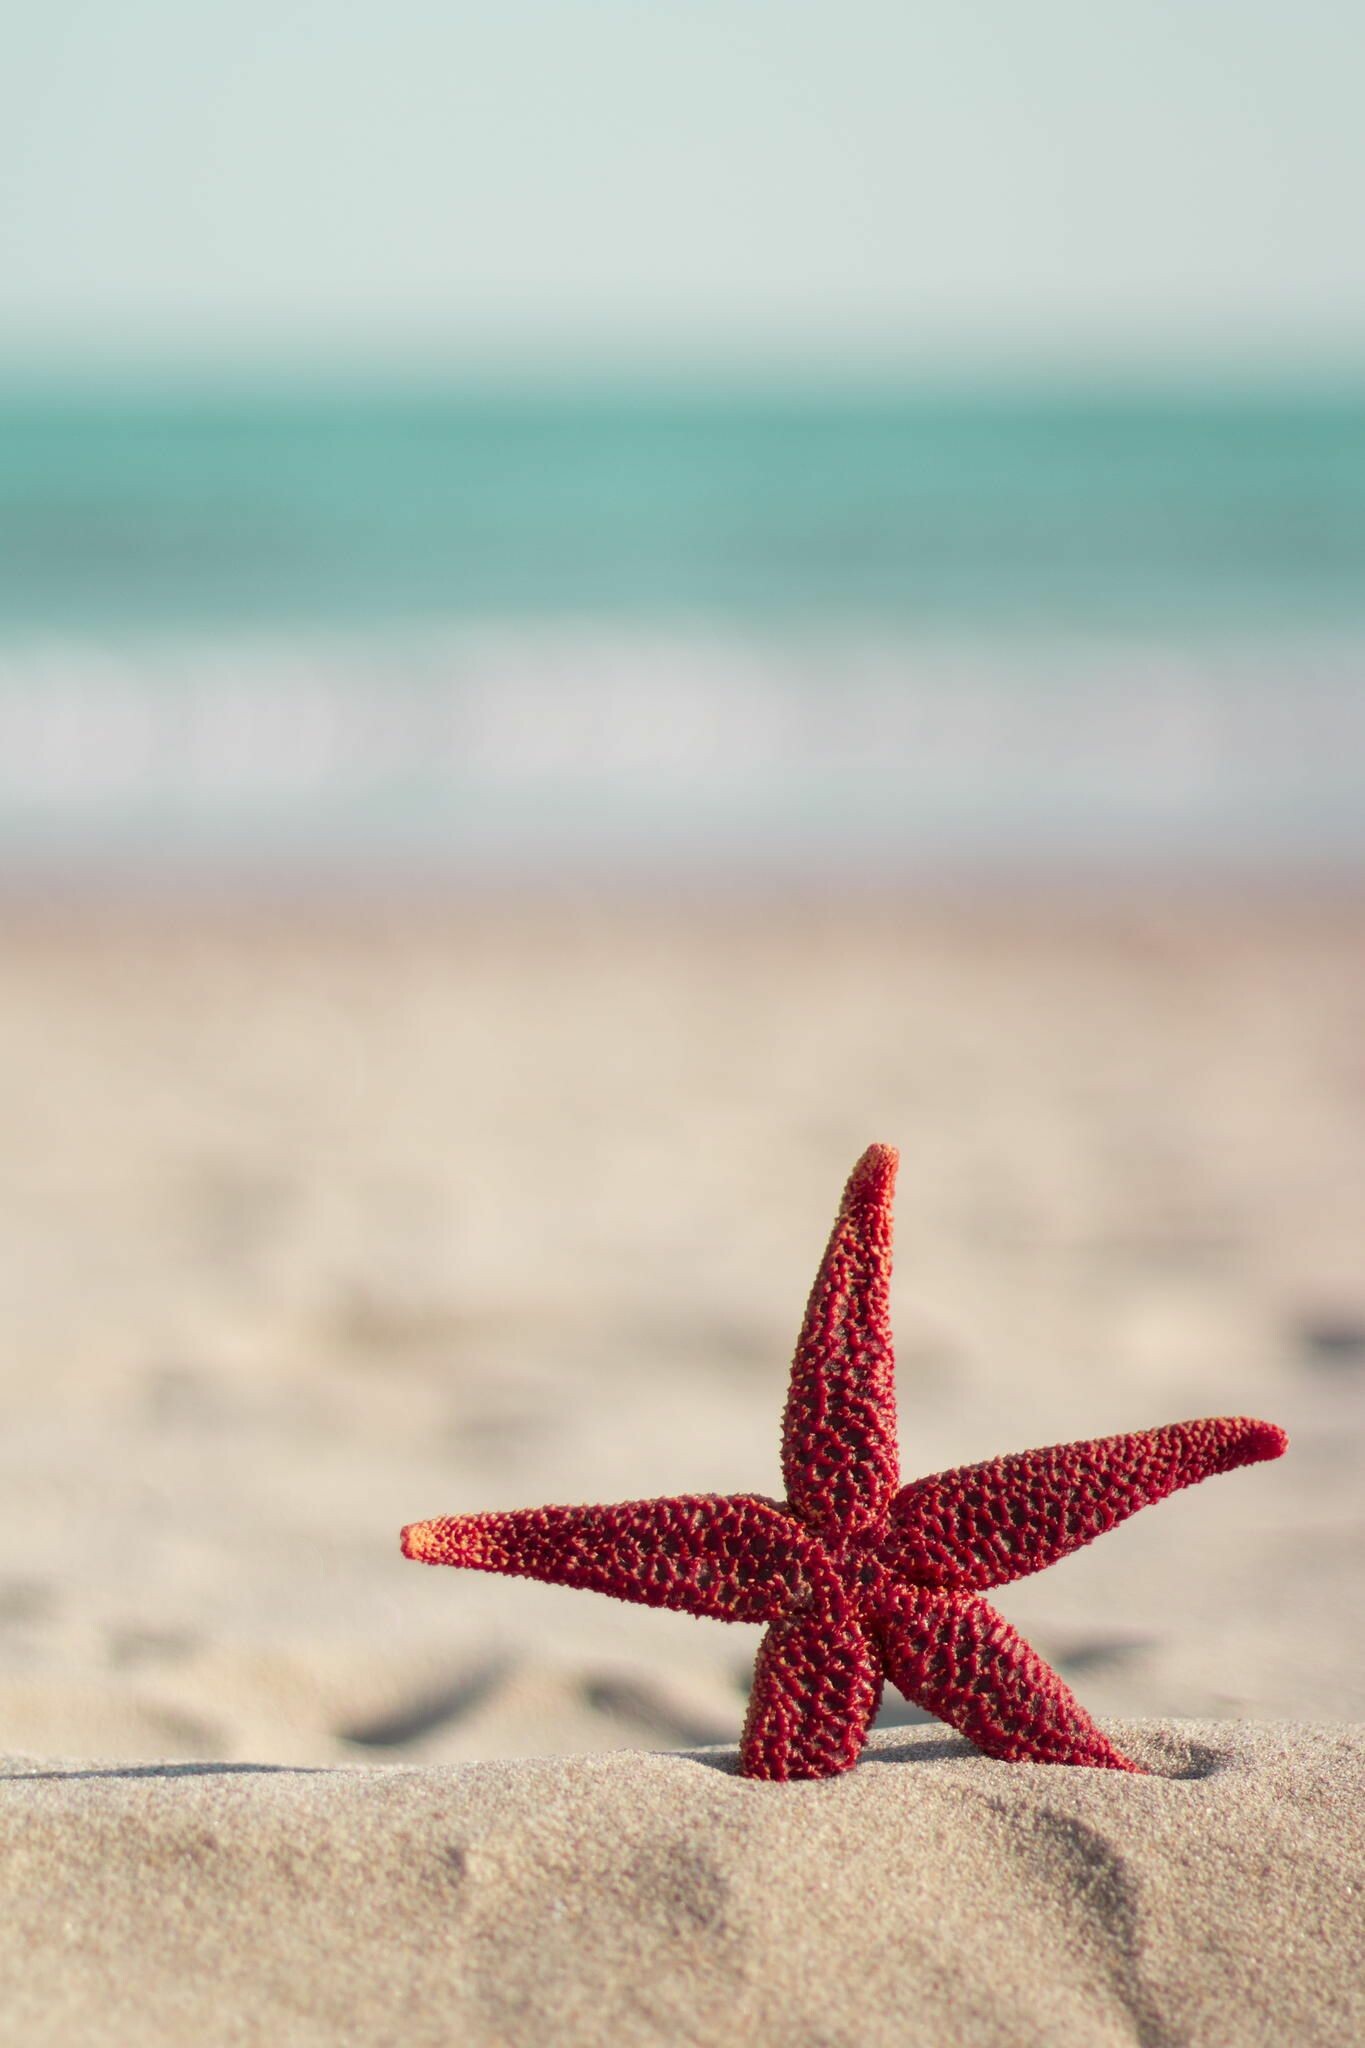 Starfish: Red starfish on the beach | Wallpaper iphone summer, Beach wallpaper, Ocean  wallpaper. 1370x2050 HD Wallpaper.